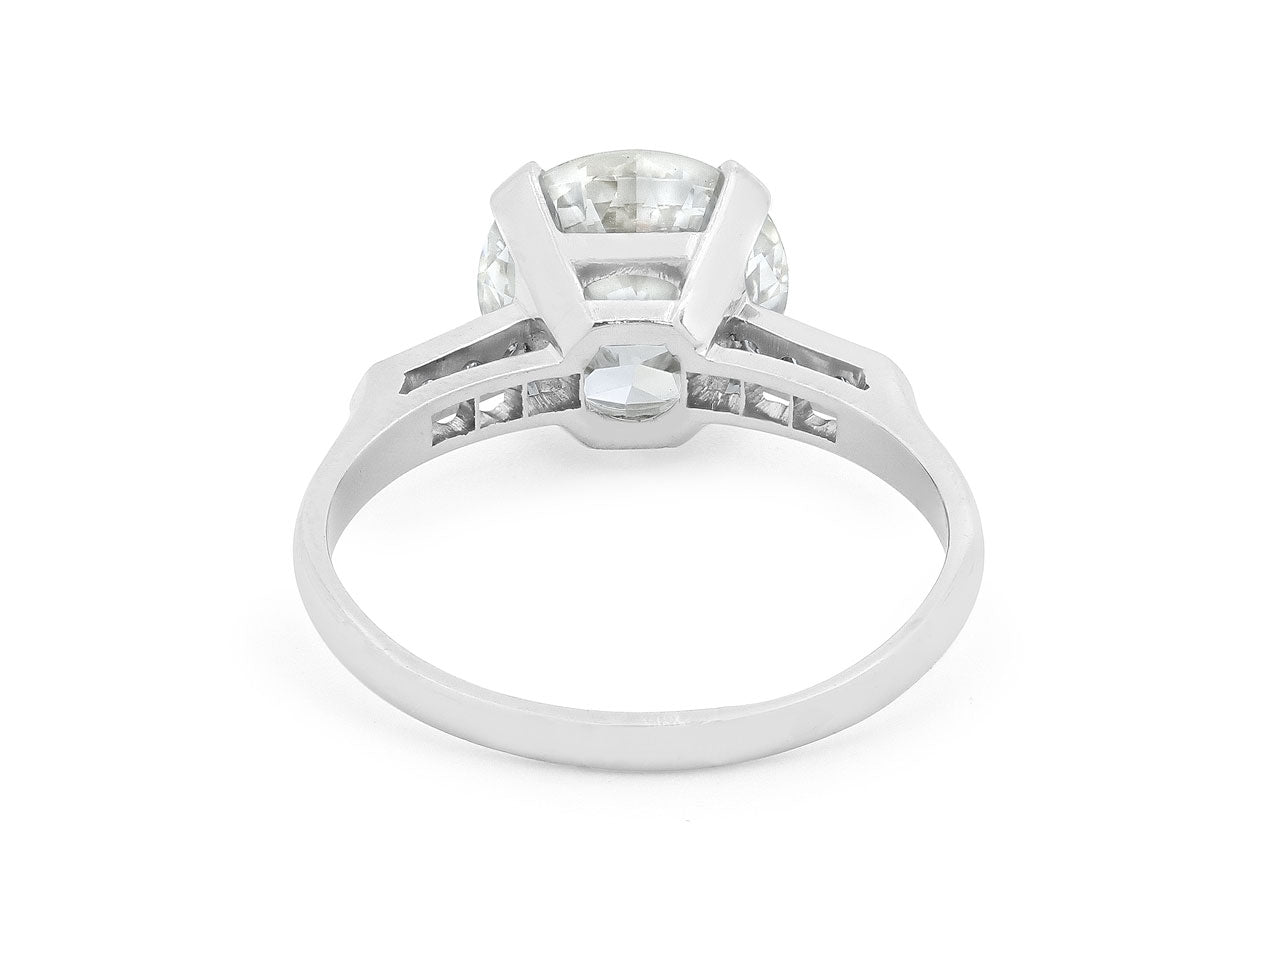 Art Deco Old Circular Brilliant Cut Diamond Ring, 3.22 carat, M/VS1, in Platinum